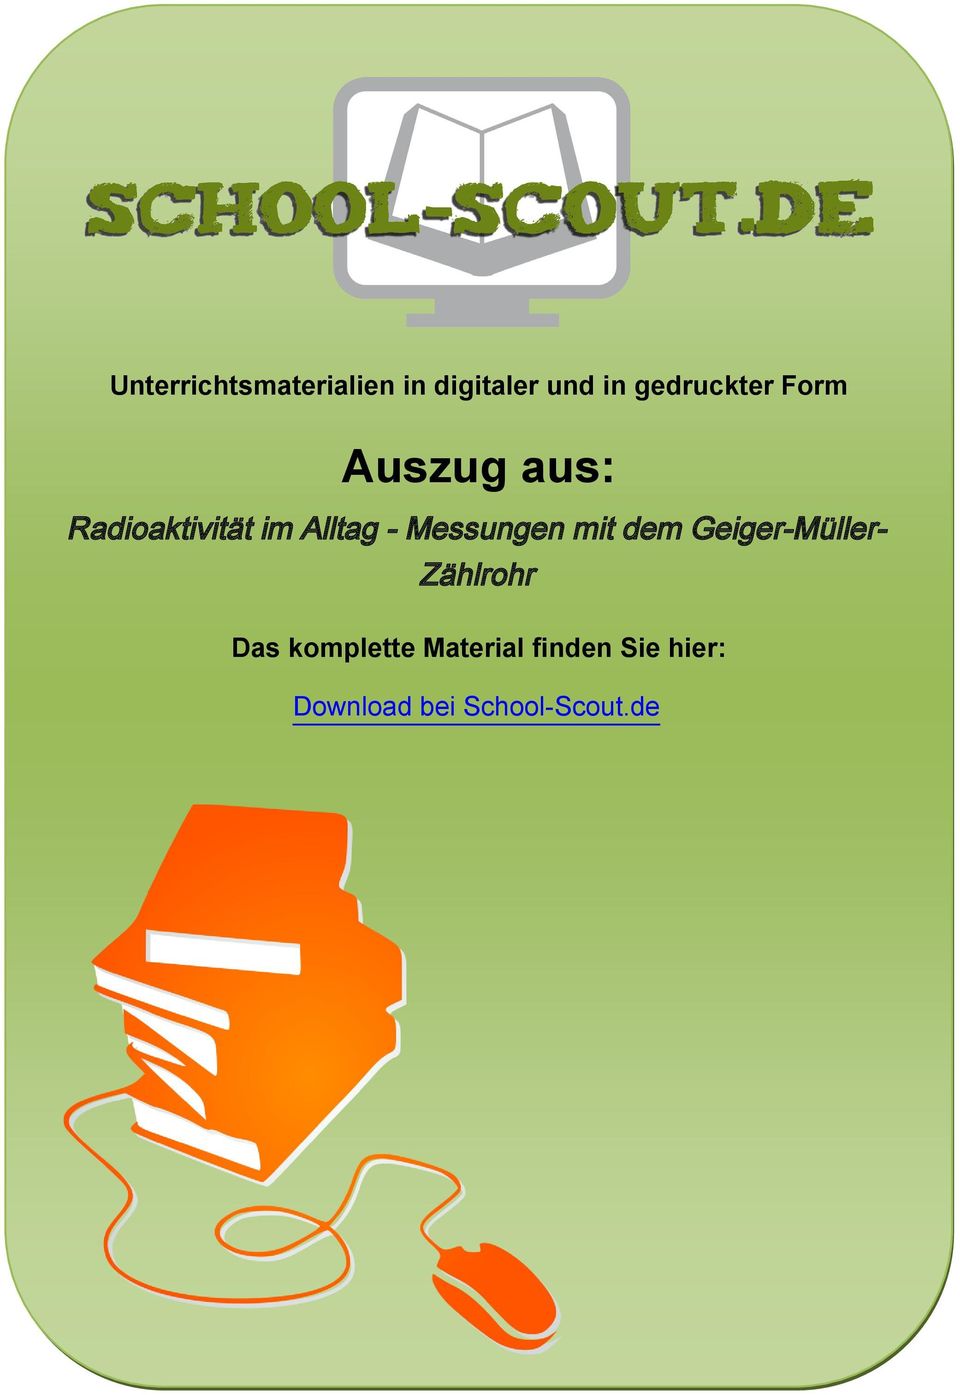 Alltag - Messungen mit dem Geiger-Müller- Zählrohr